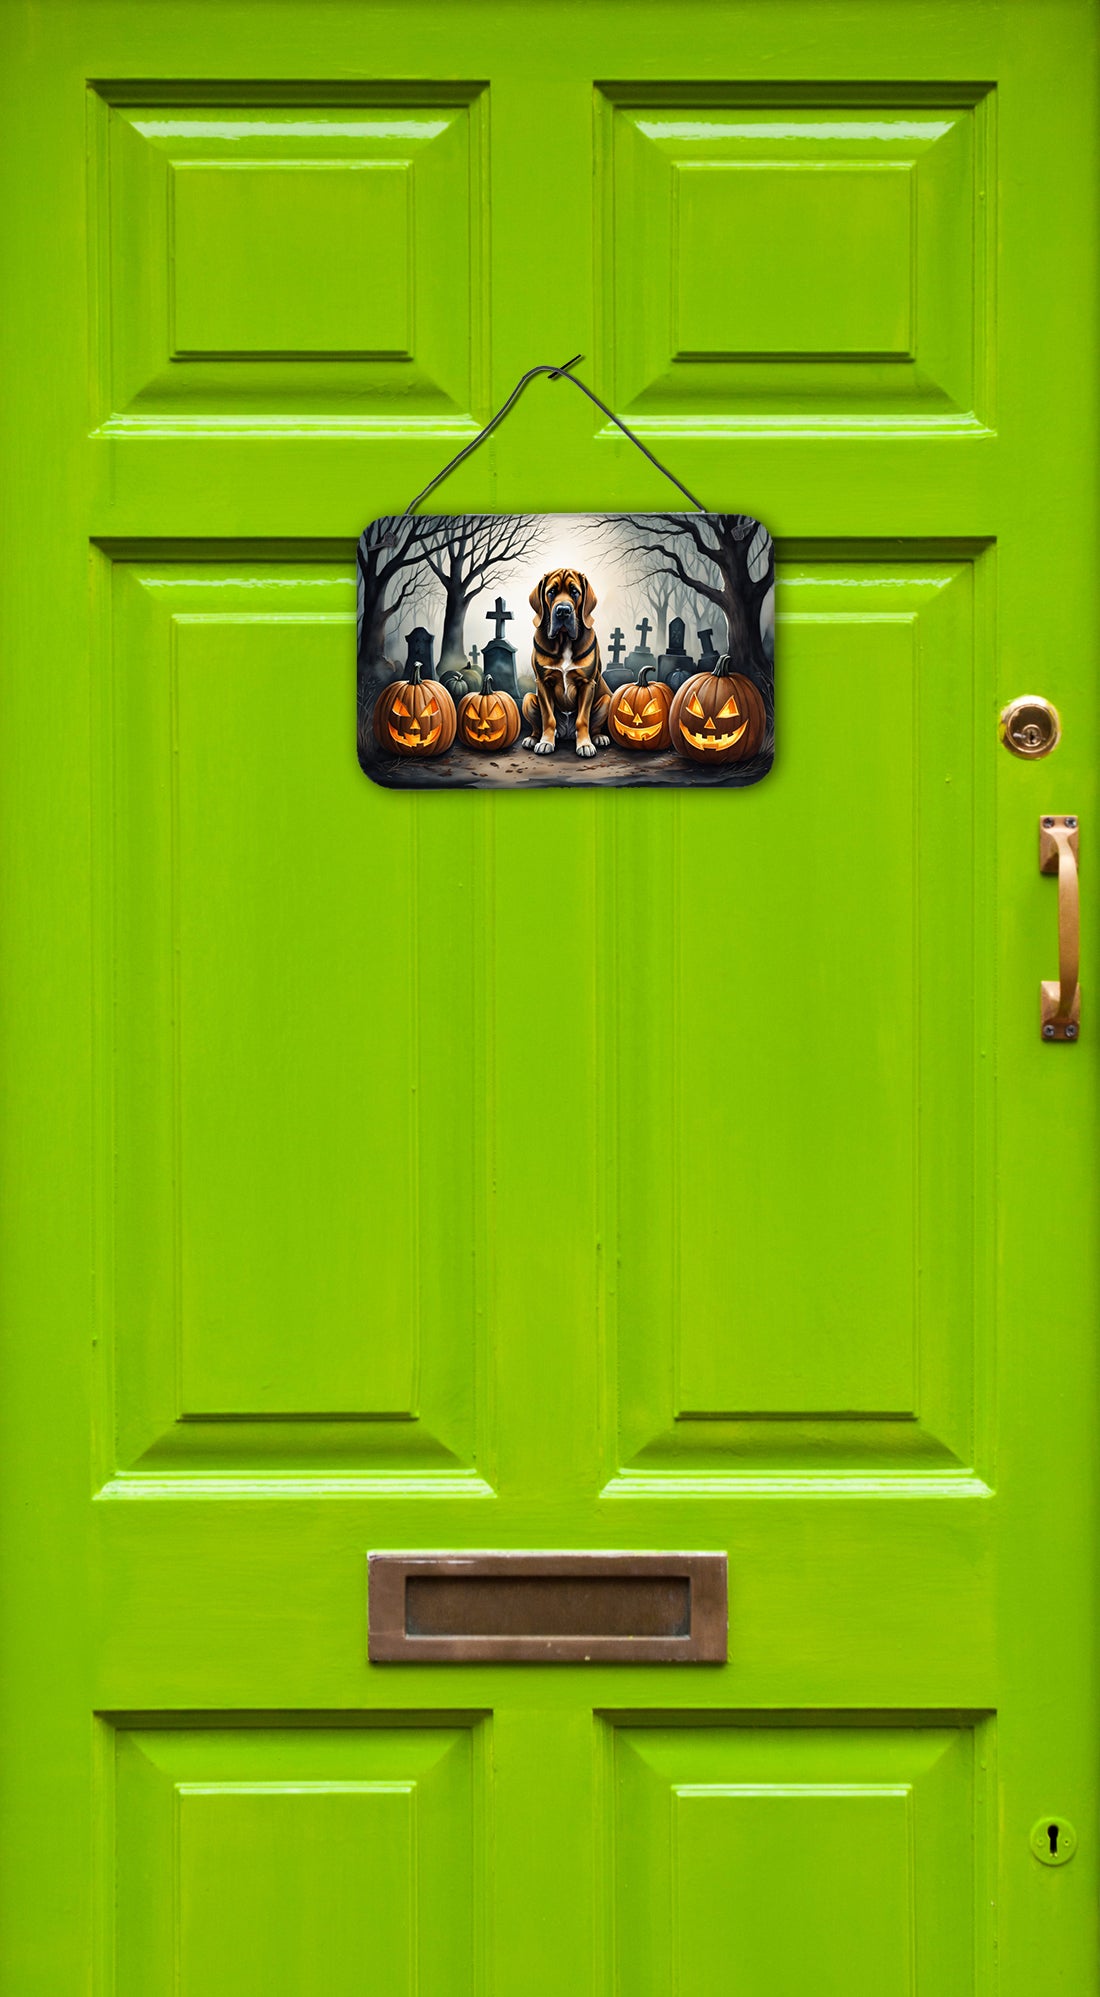 Buy this Bloodhound Spooky Halloween Wall or Door Hanging Prints